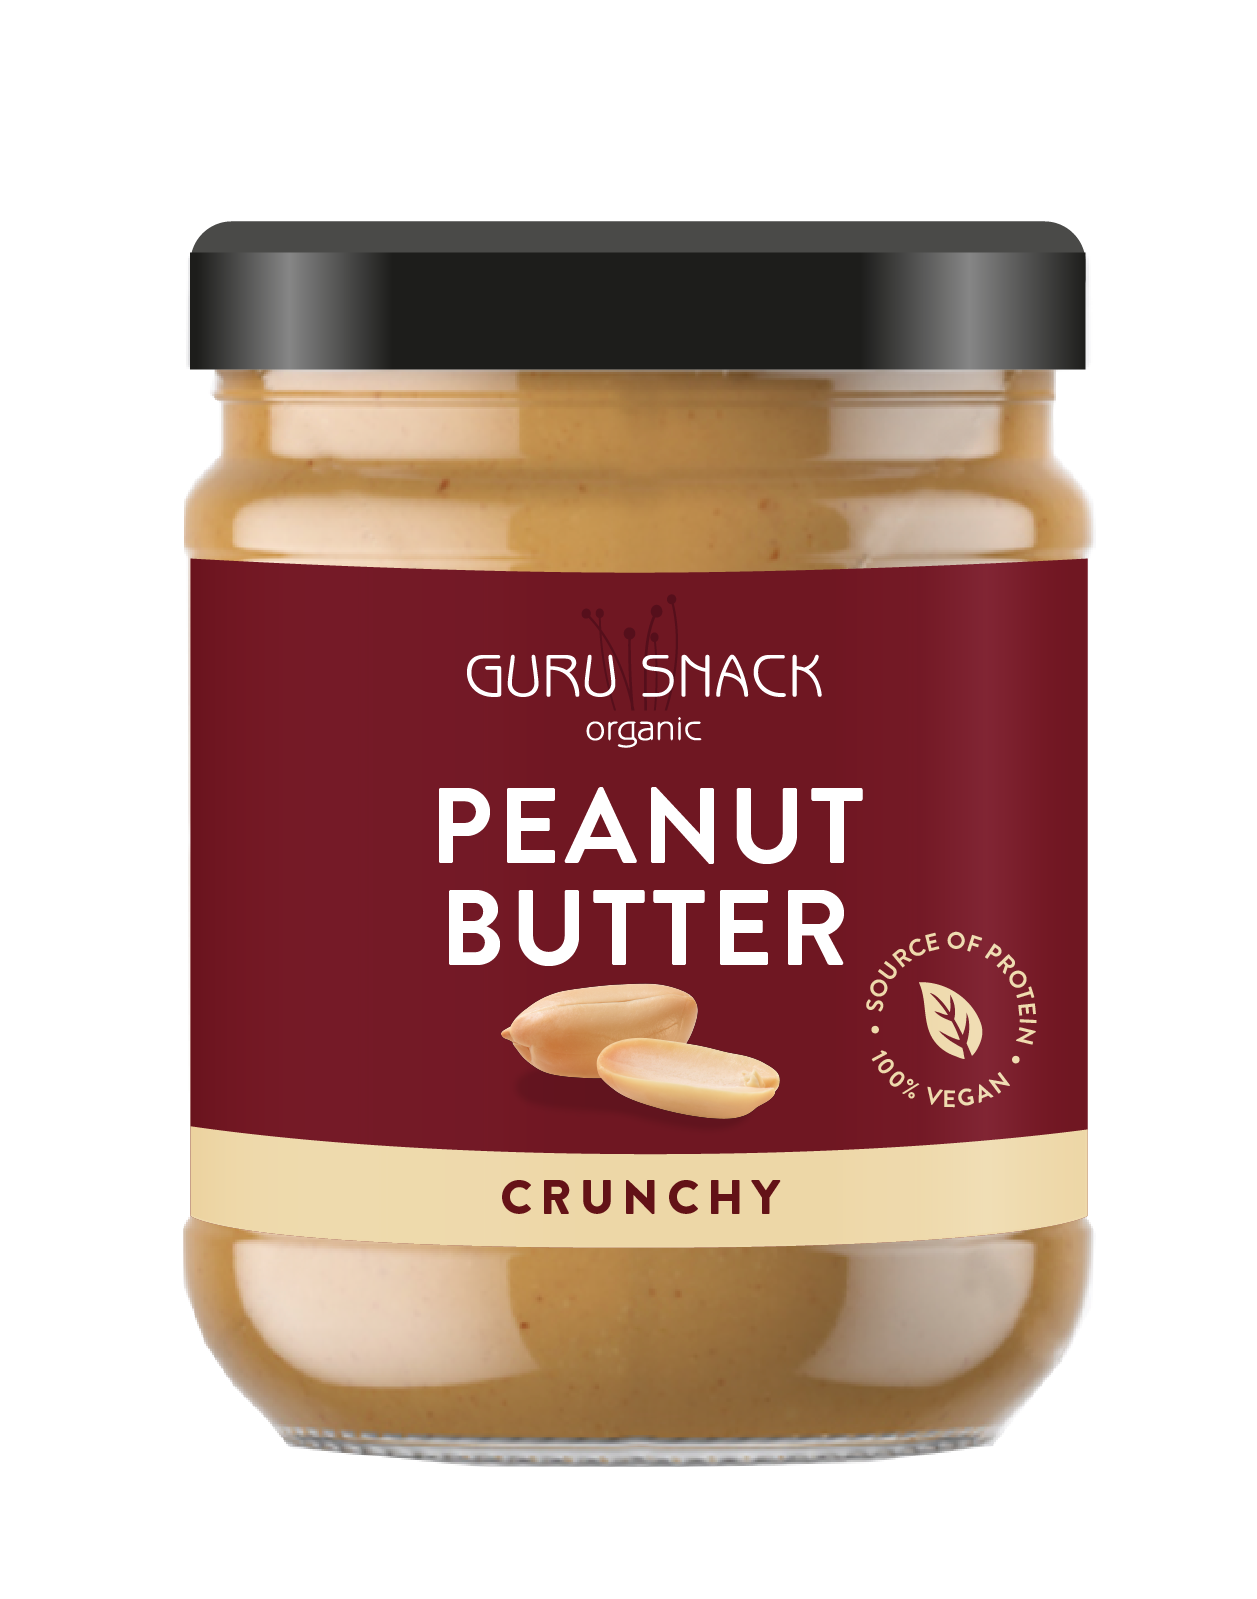 Peanut Butter - Crunchy 250g